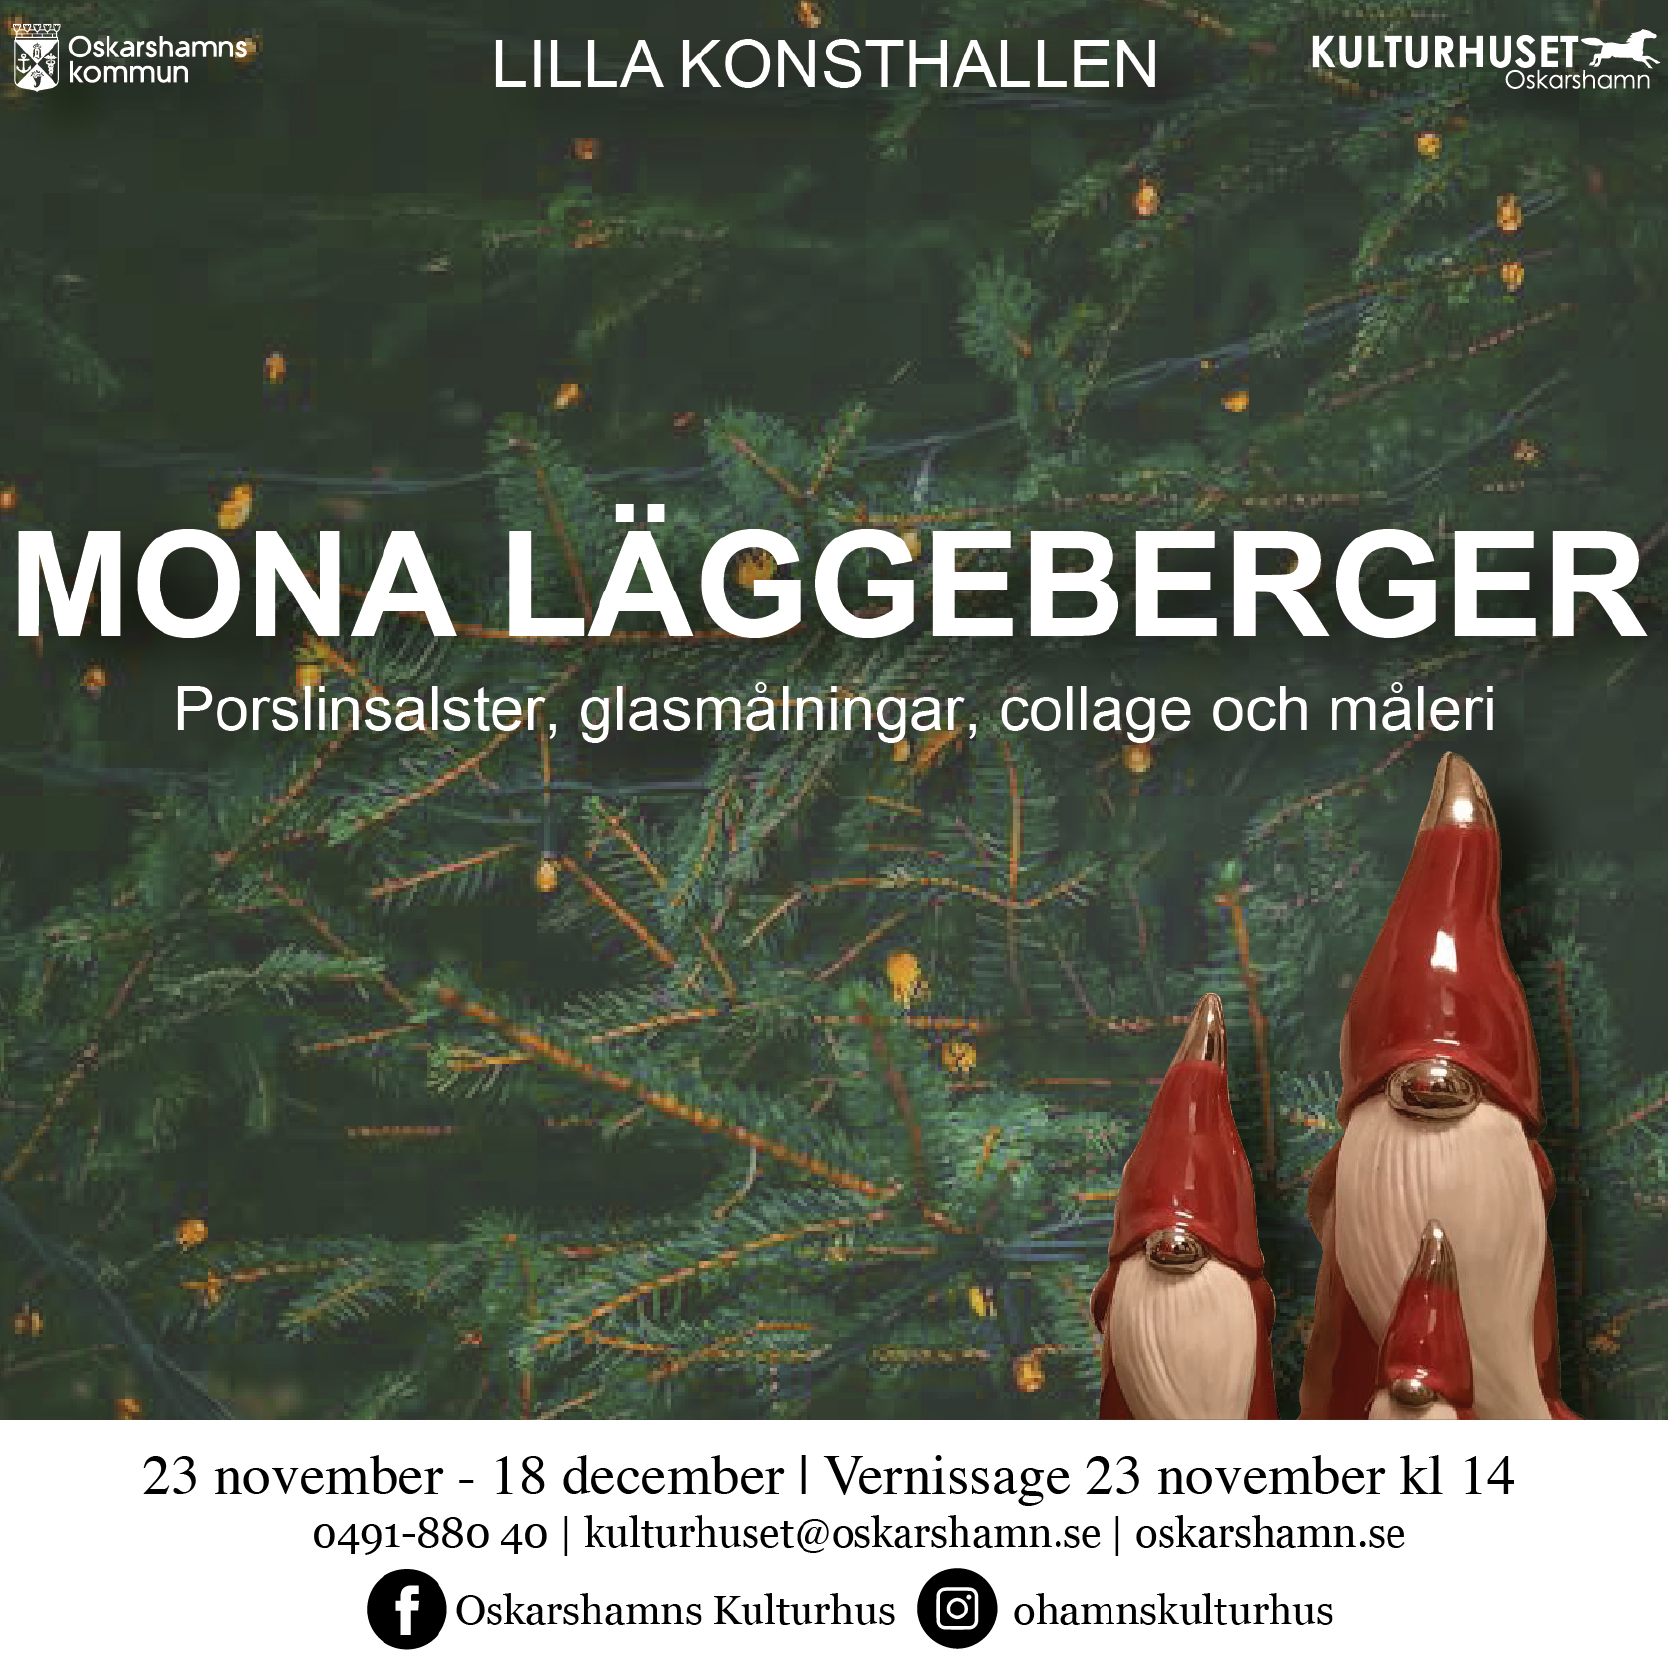 Mona Läggerberger